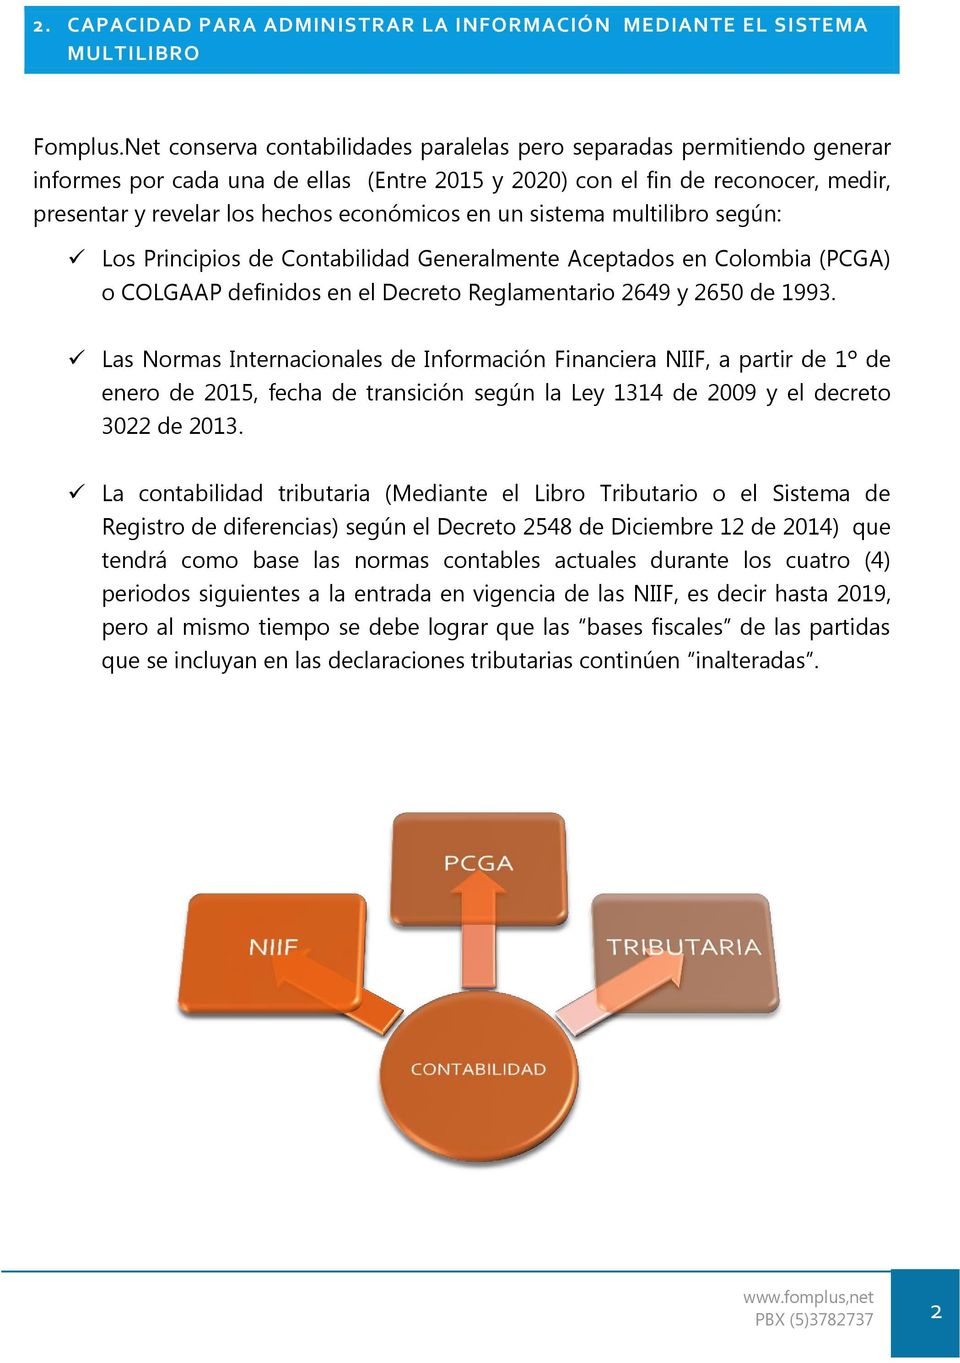 en un sistema multilibro según: Los Principios de Contabilidad Generalmente Aceptados en Colombia (PCGA) o COLGAAP definidos en el Decreto Reglamentario 2649 y 2650 de 1993.